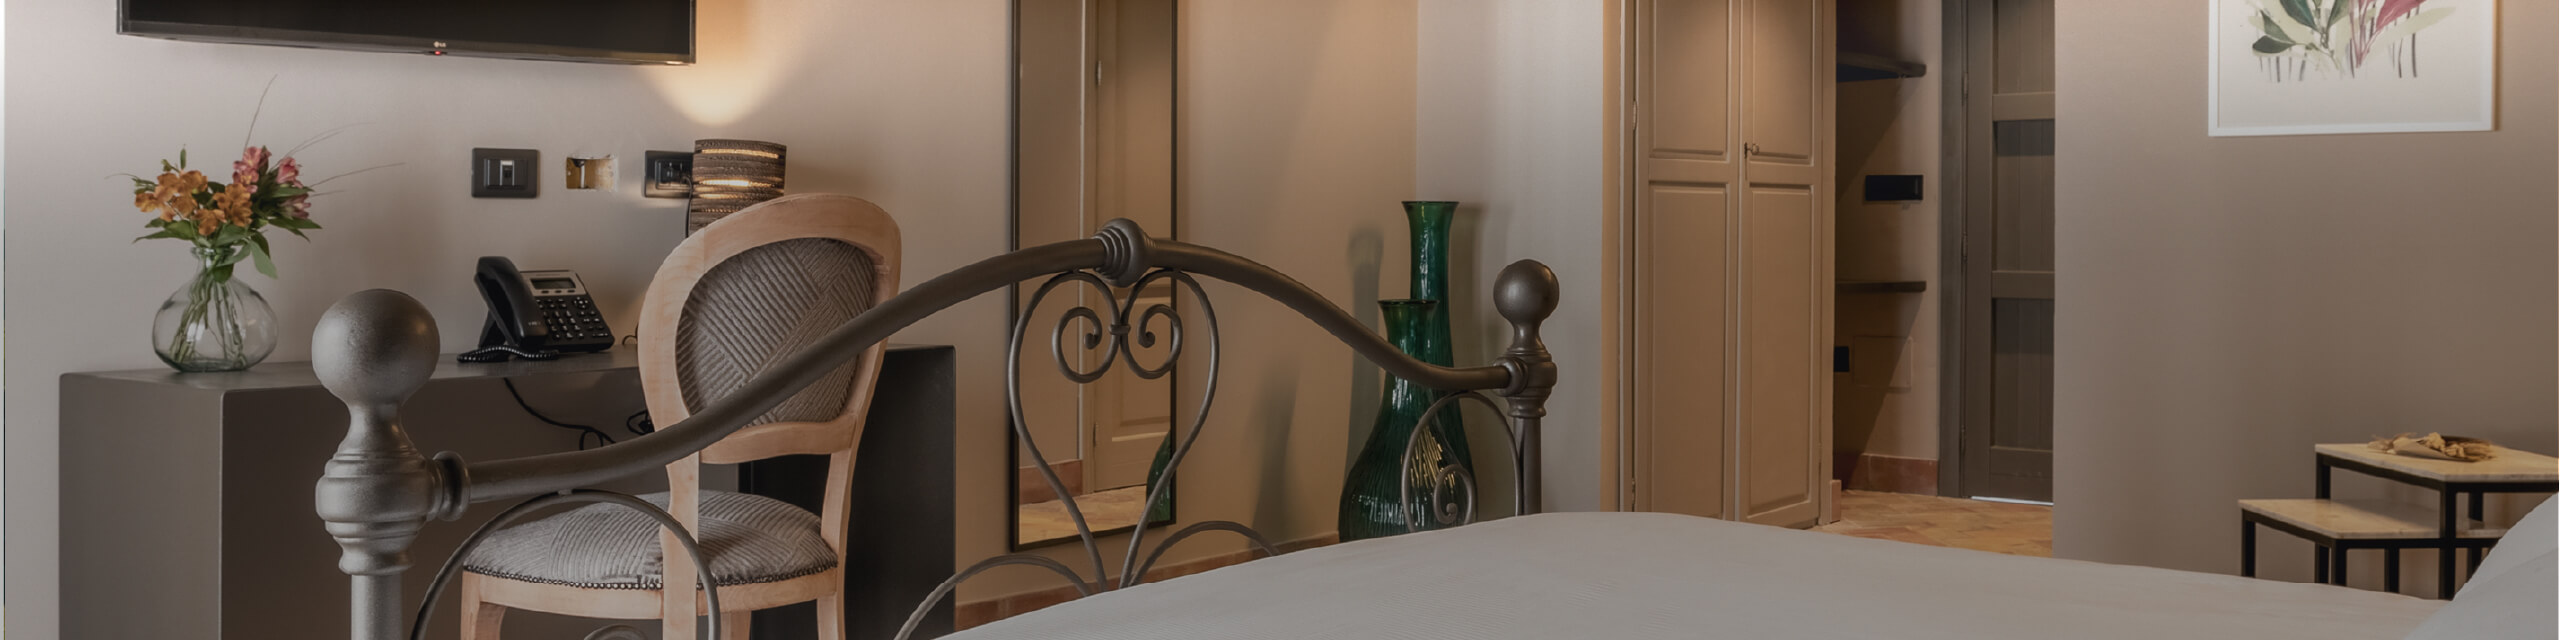 Masseria del Carboj - Camere e Suites - Classic Room